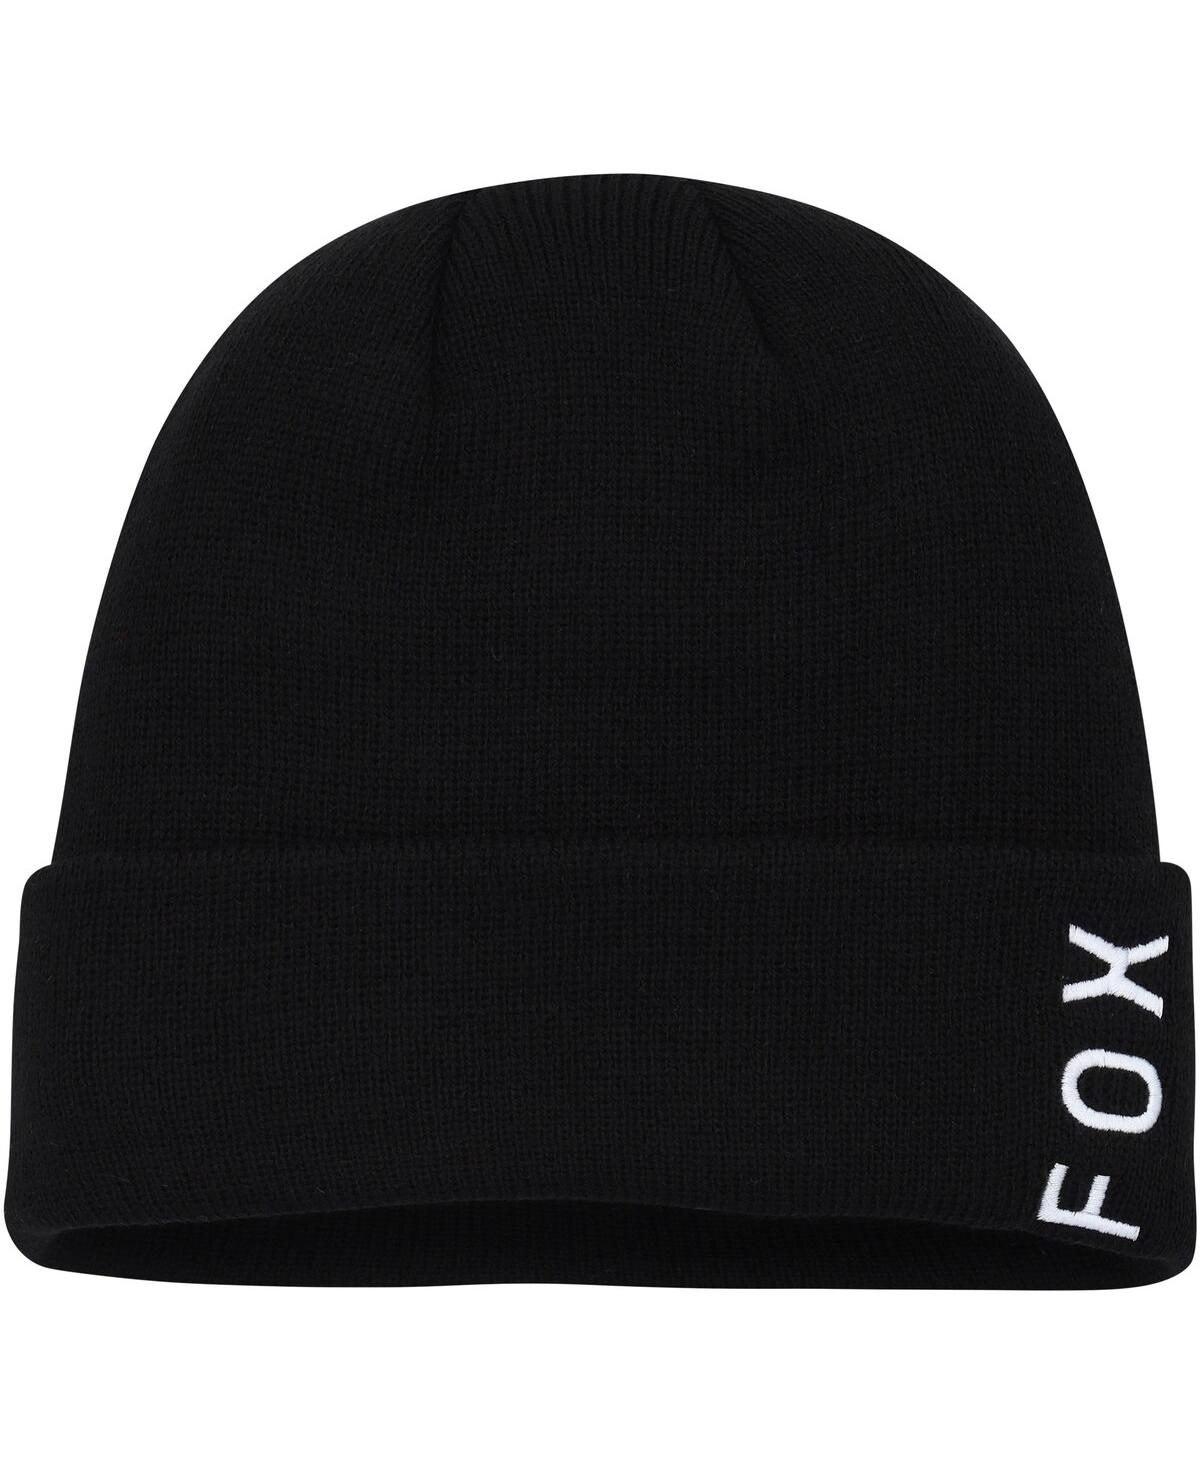 Women's Fox Black Wordmark Cuffed Knit Hat - Black